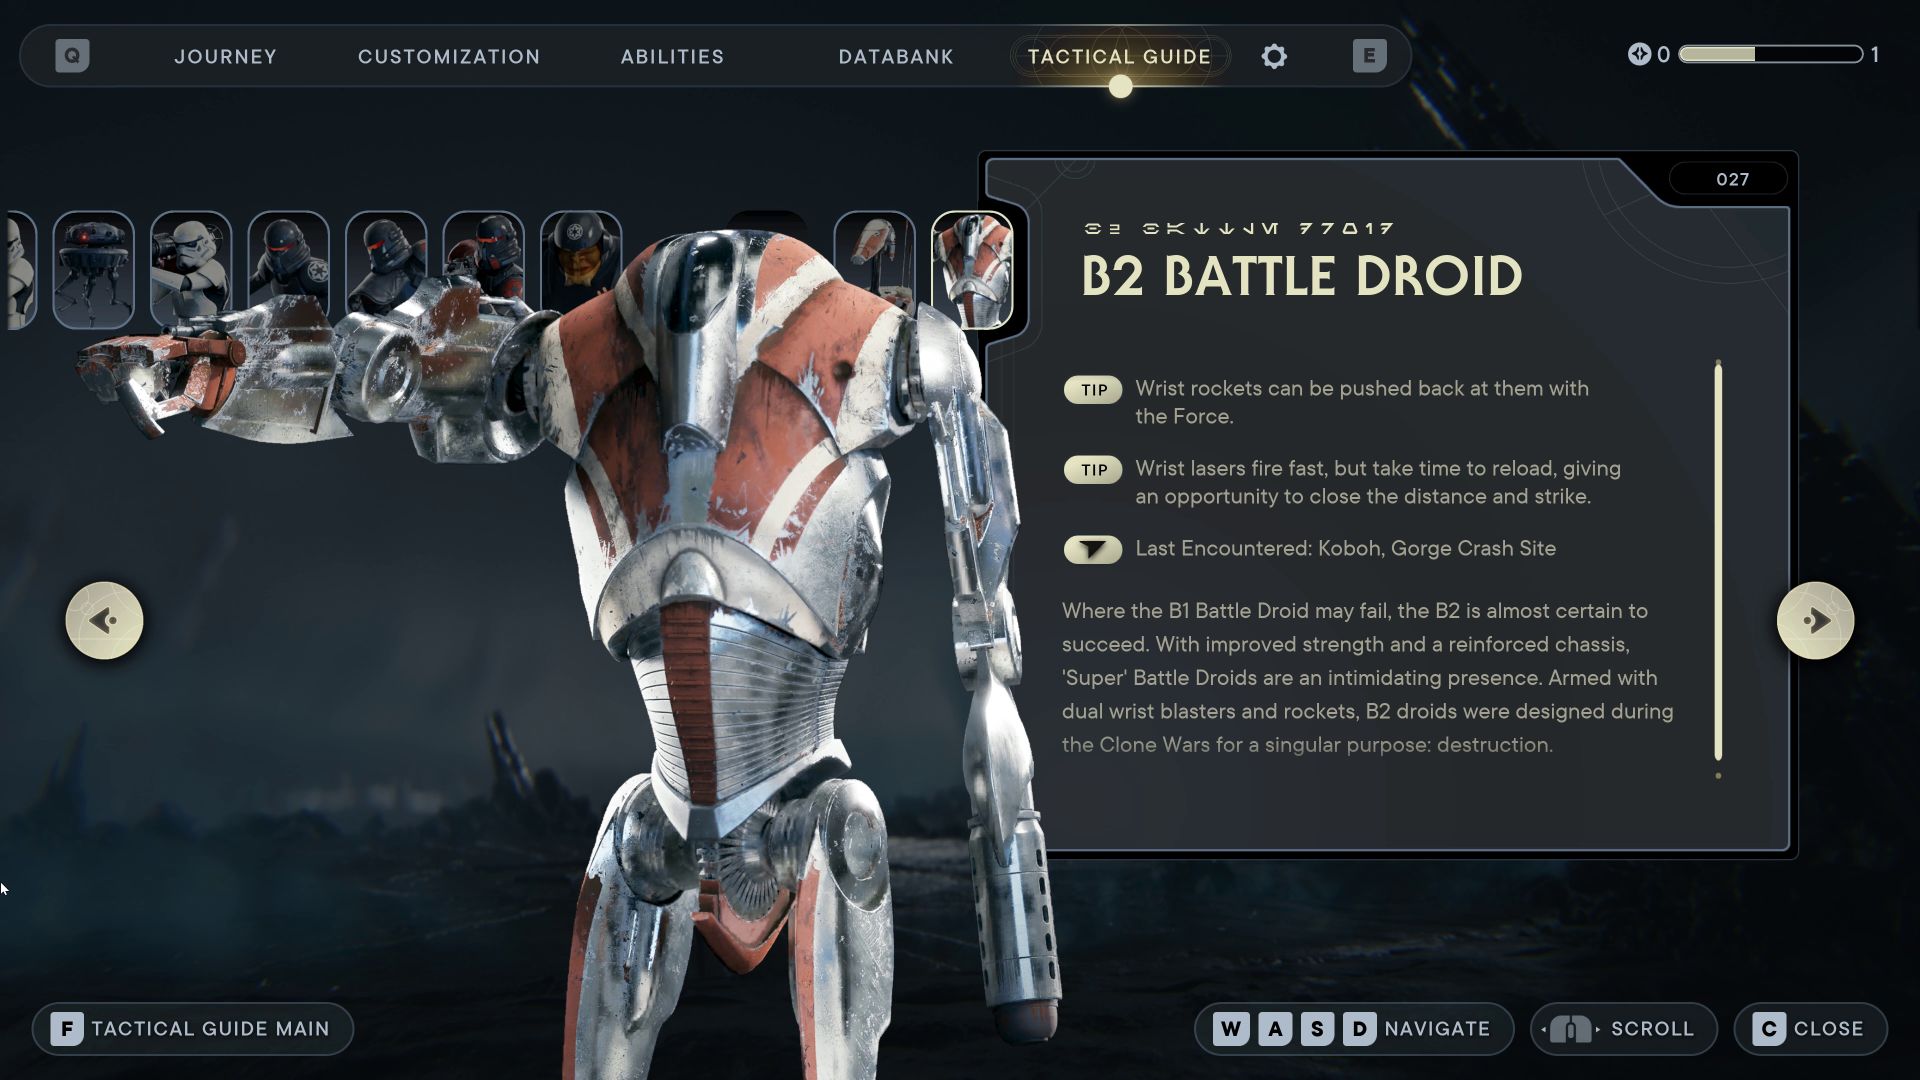 B2 Battle Droid (027) Star Wars Jedi Survivor Tactical Guide Update - Star Wars Jedi Survivor